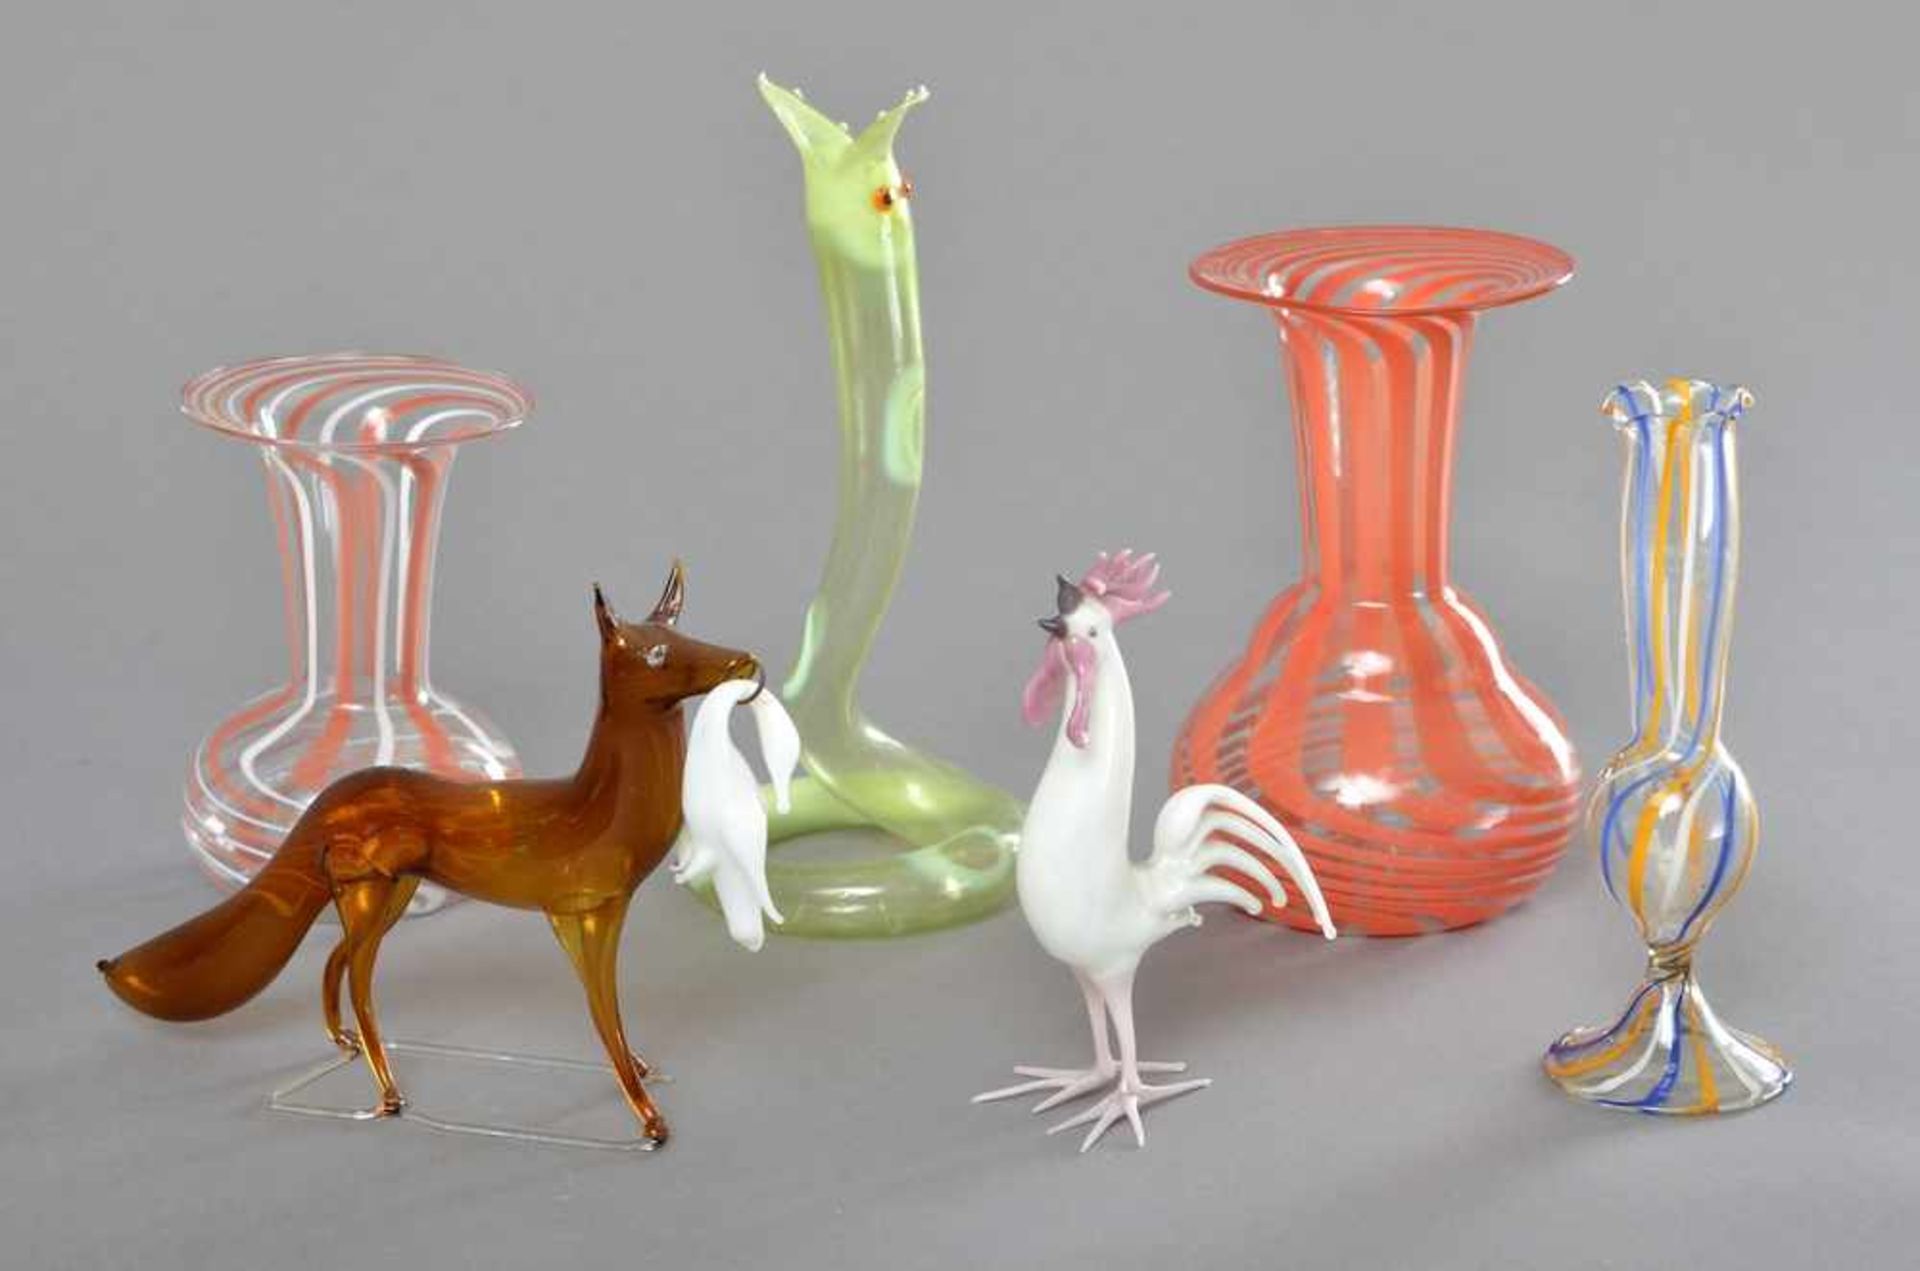 6 Diverse Teile Bimini Glas: 3 Vasen (H. 9-12cm) und 3 Tiere "Fuchs", "Hahn" und "Schlange", um